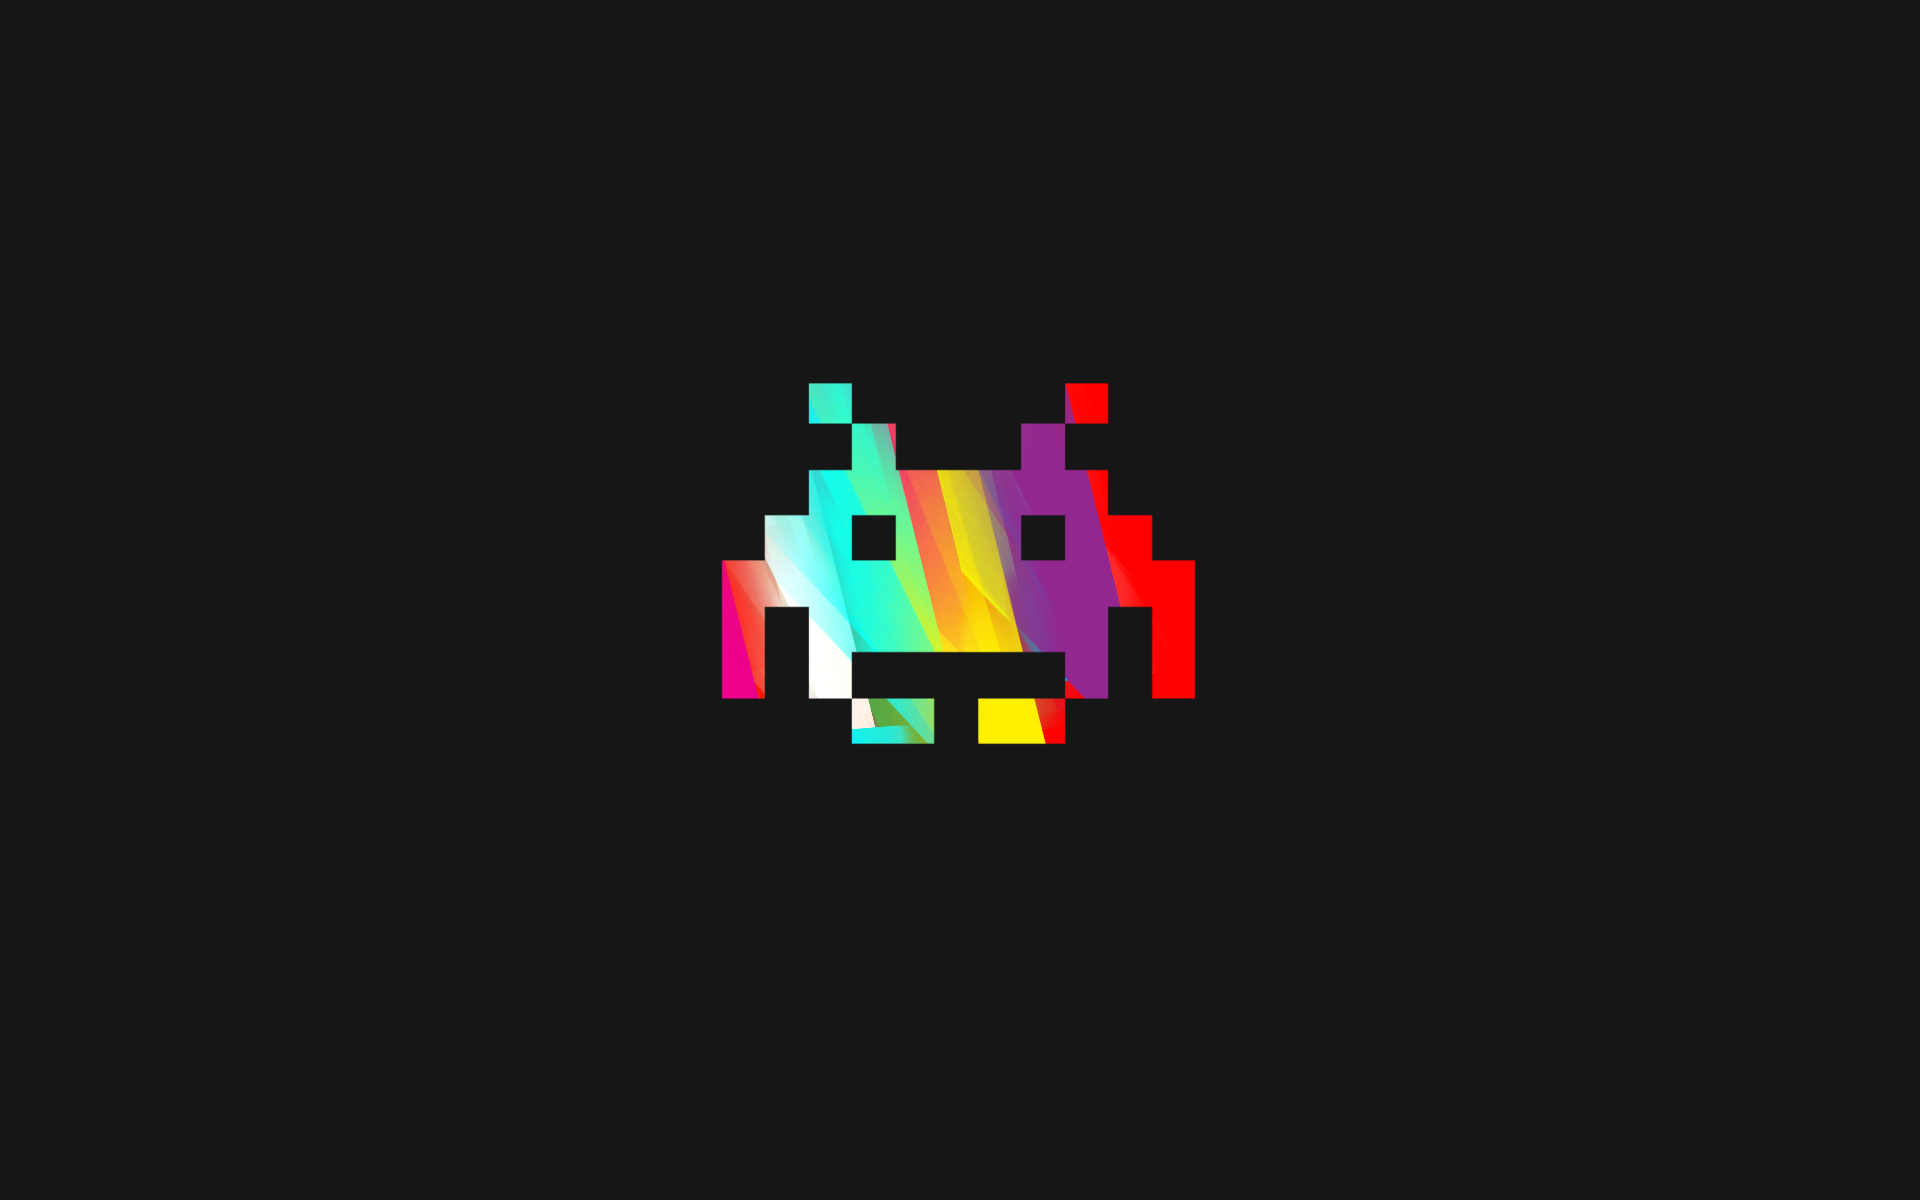 multicolor, Space Invaders, rainbows, vivid colors, retro games - desktop wallpaper